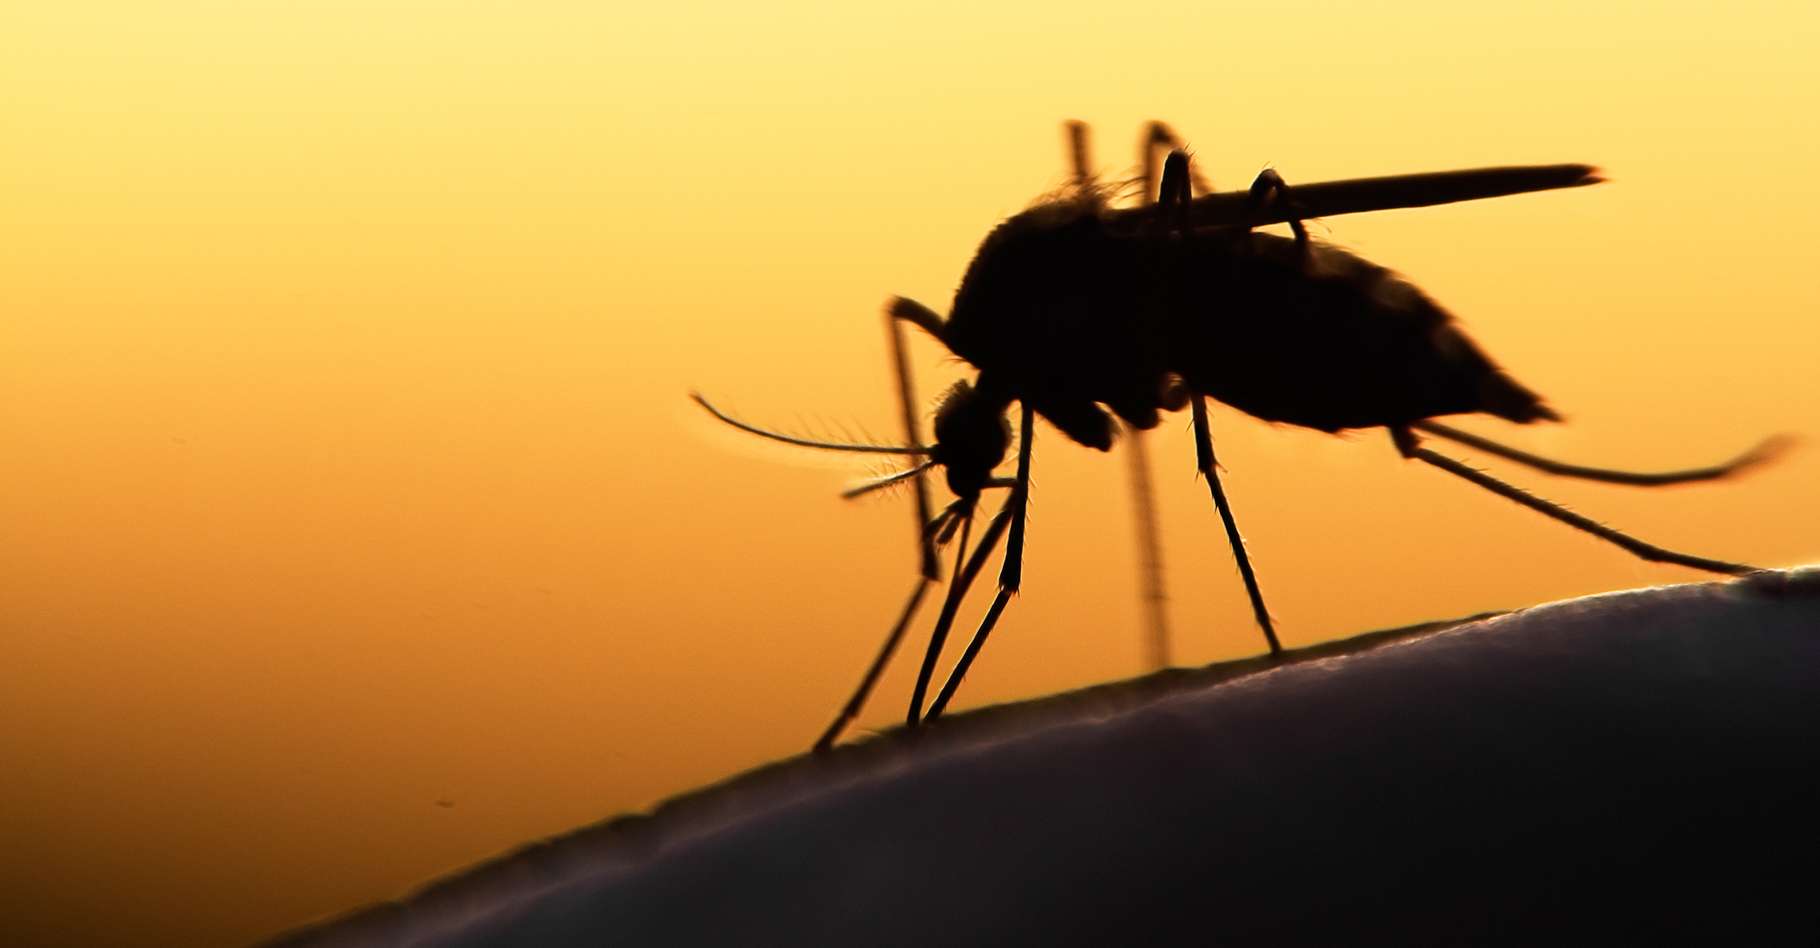 Pour se protéger des moustiques, mieux vaut commencer par éliminer les sources d'eaux stagnantes. © mycteria, Shutterstock